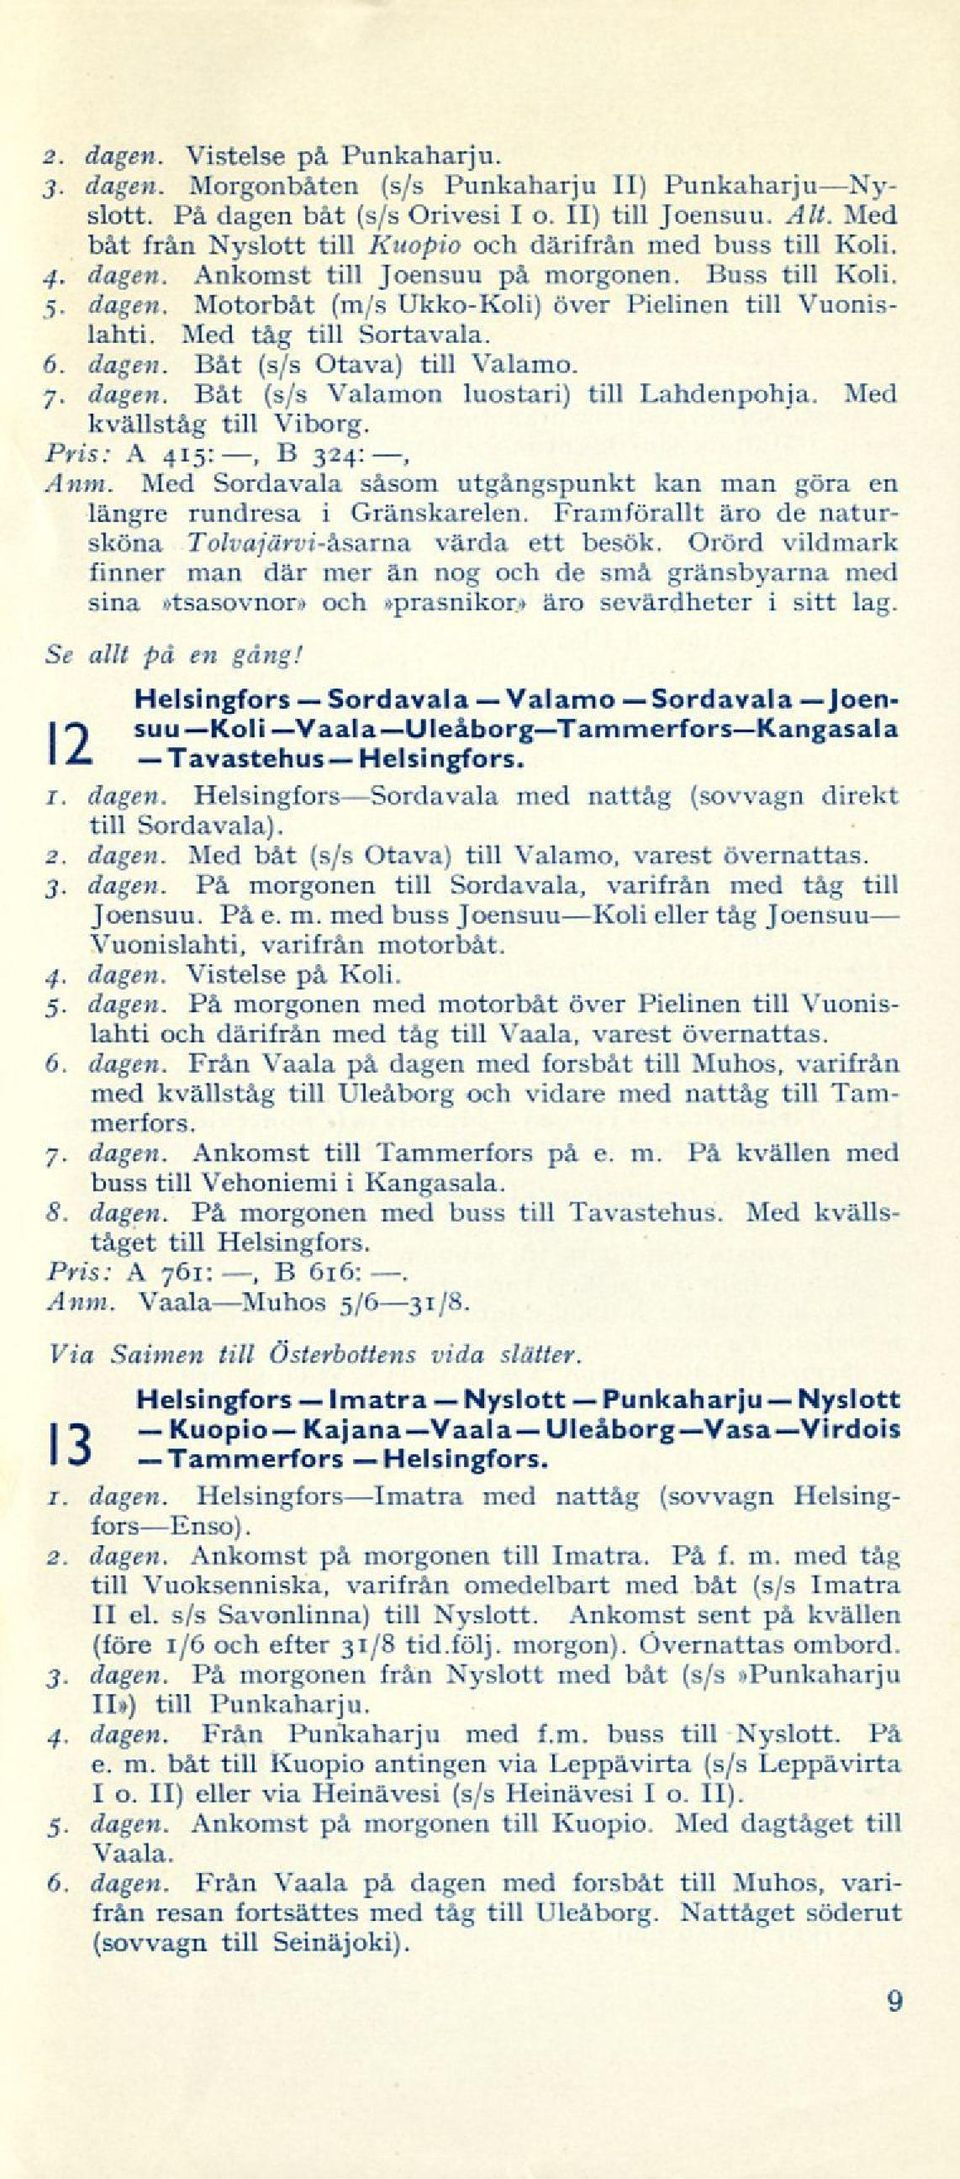 Med tåg till Sortavala. 6. dagen. Båt (s/s Otava) till Valamo. 7. dagen. Båt (s/s Valamon luostari) till Lahdenpohja. Mcd kvällståg till Viborg. Pris: A 415:, B 324:, Anm.